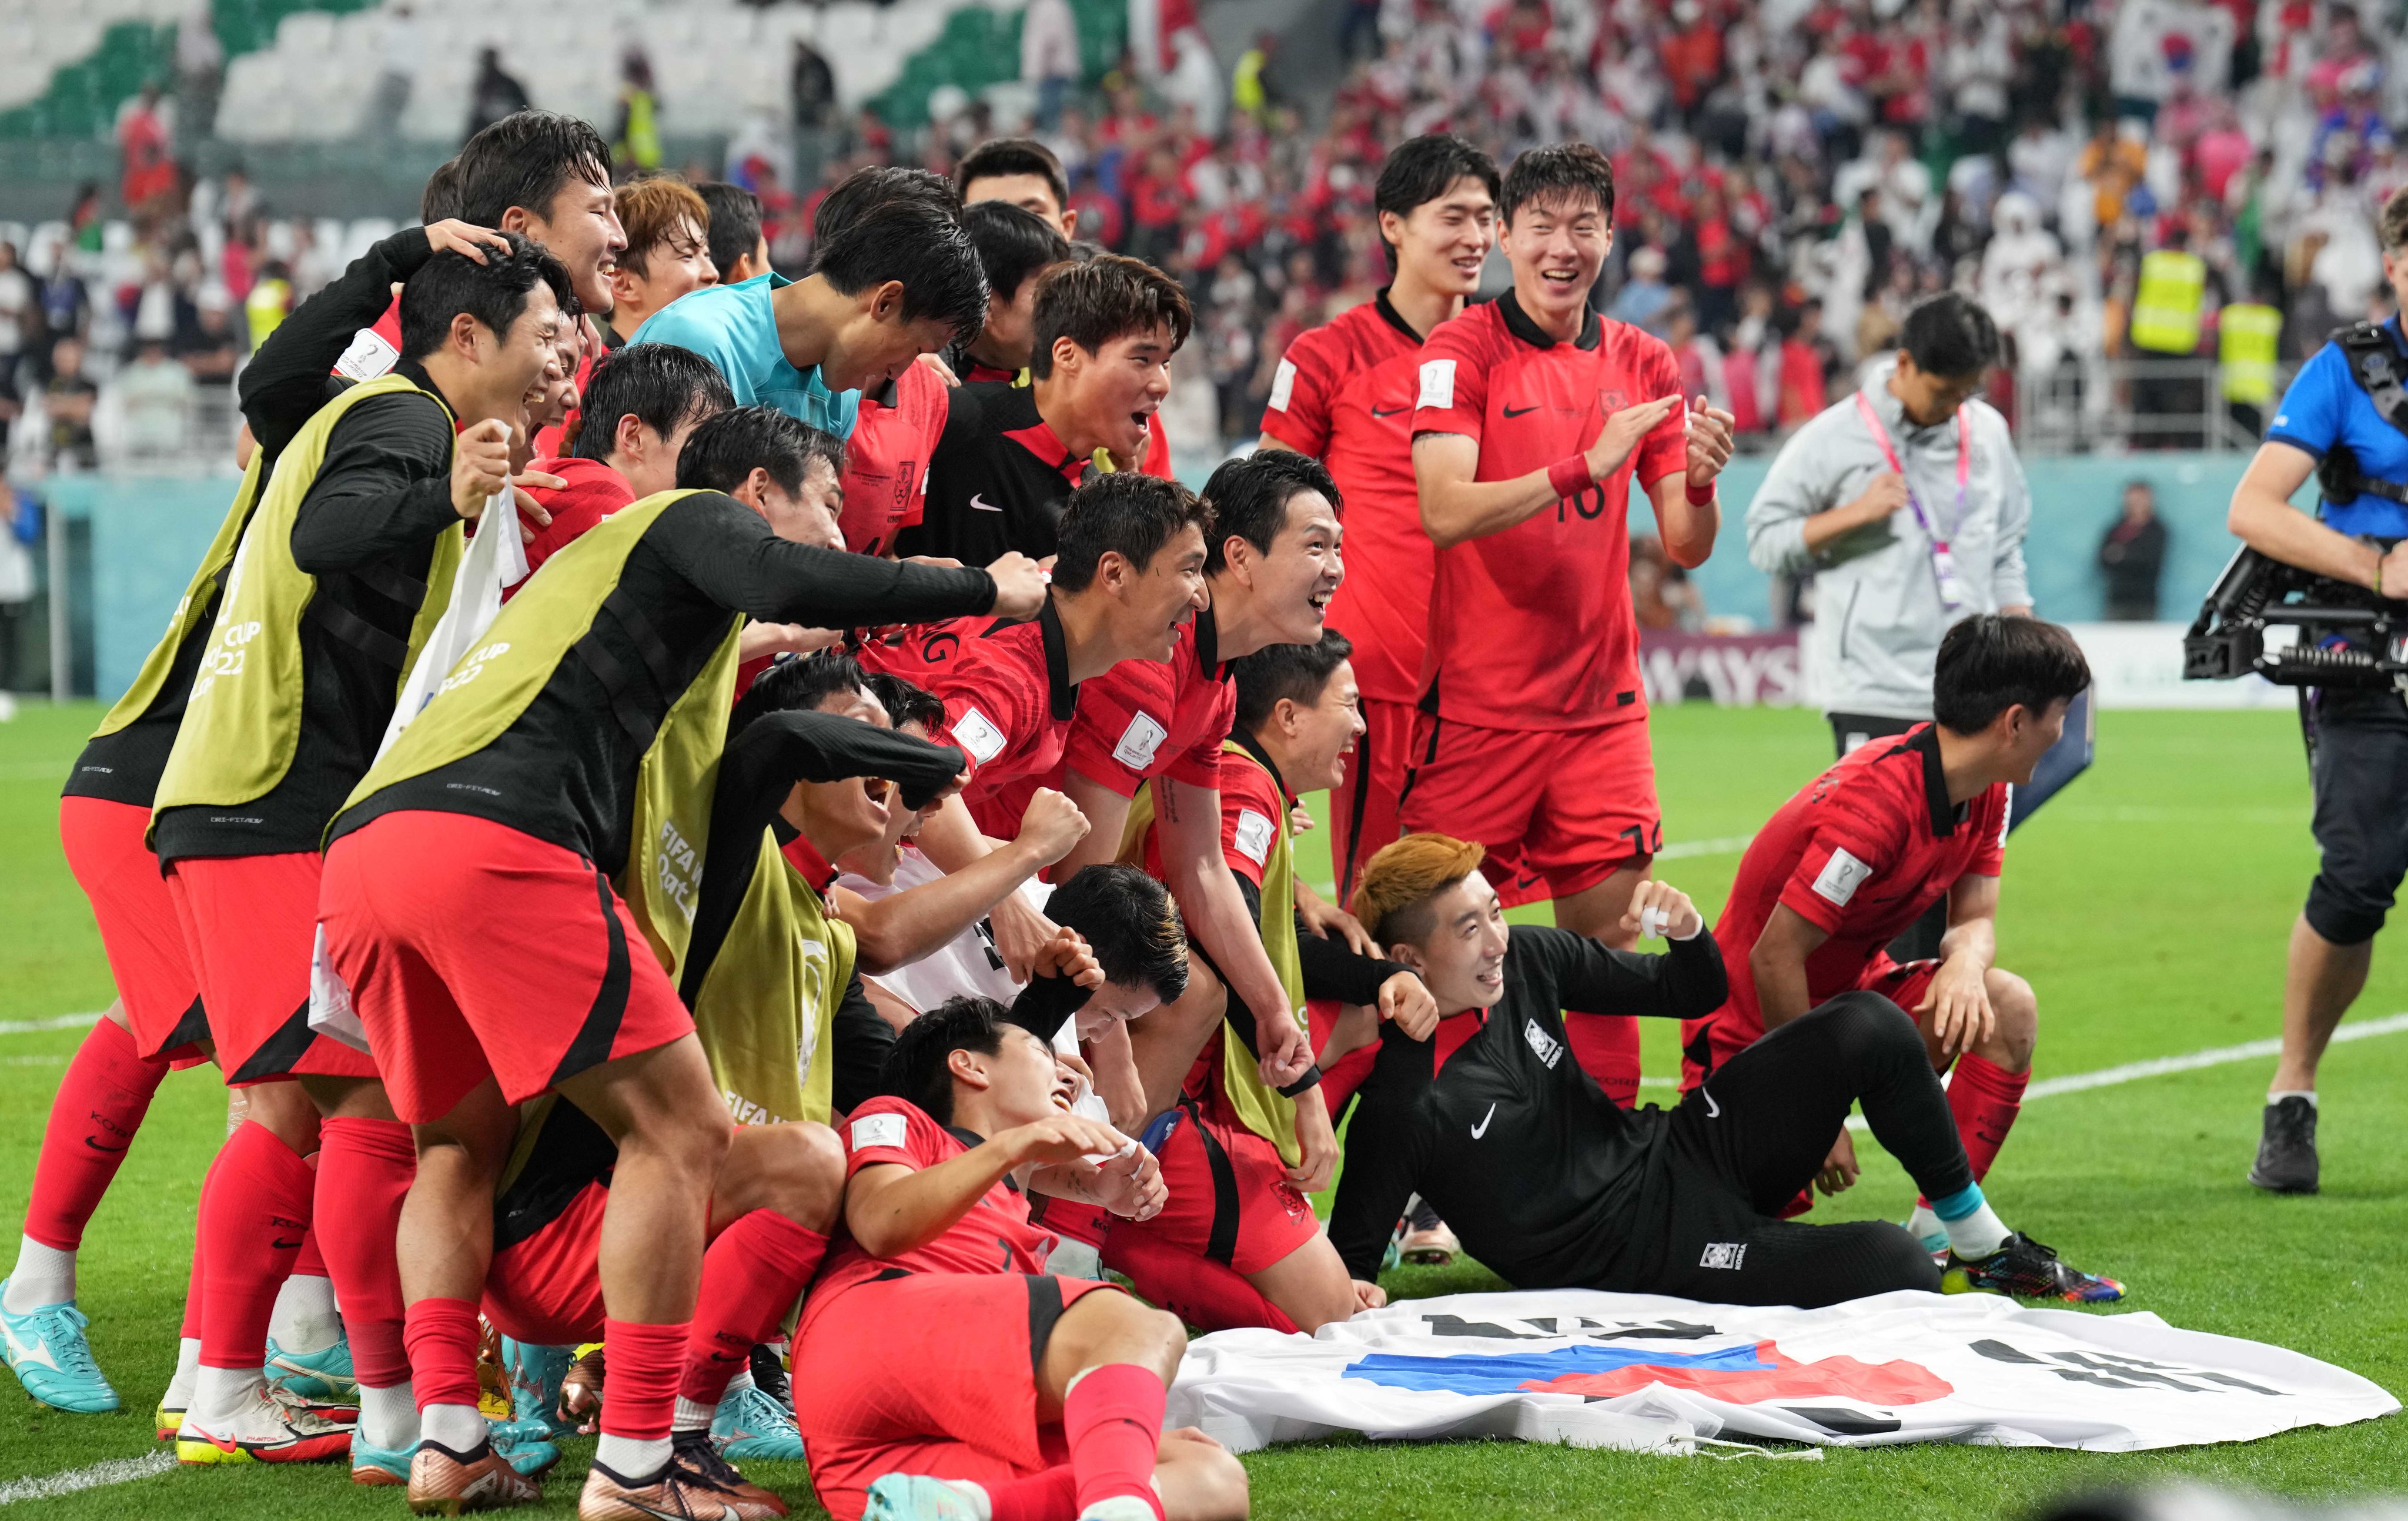 فرحة لاعبي منتخب كوريا الجنوبية بالفوز والتأهل